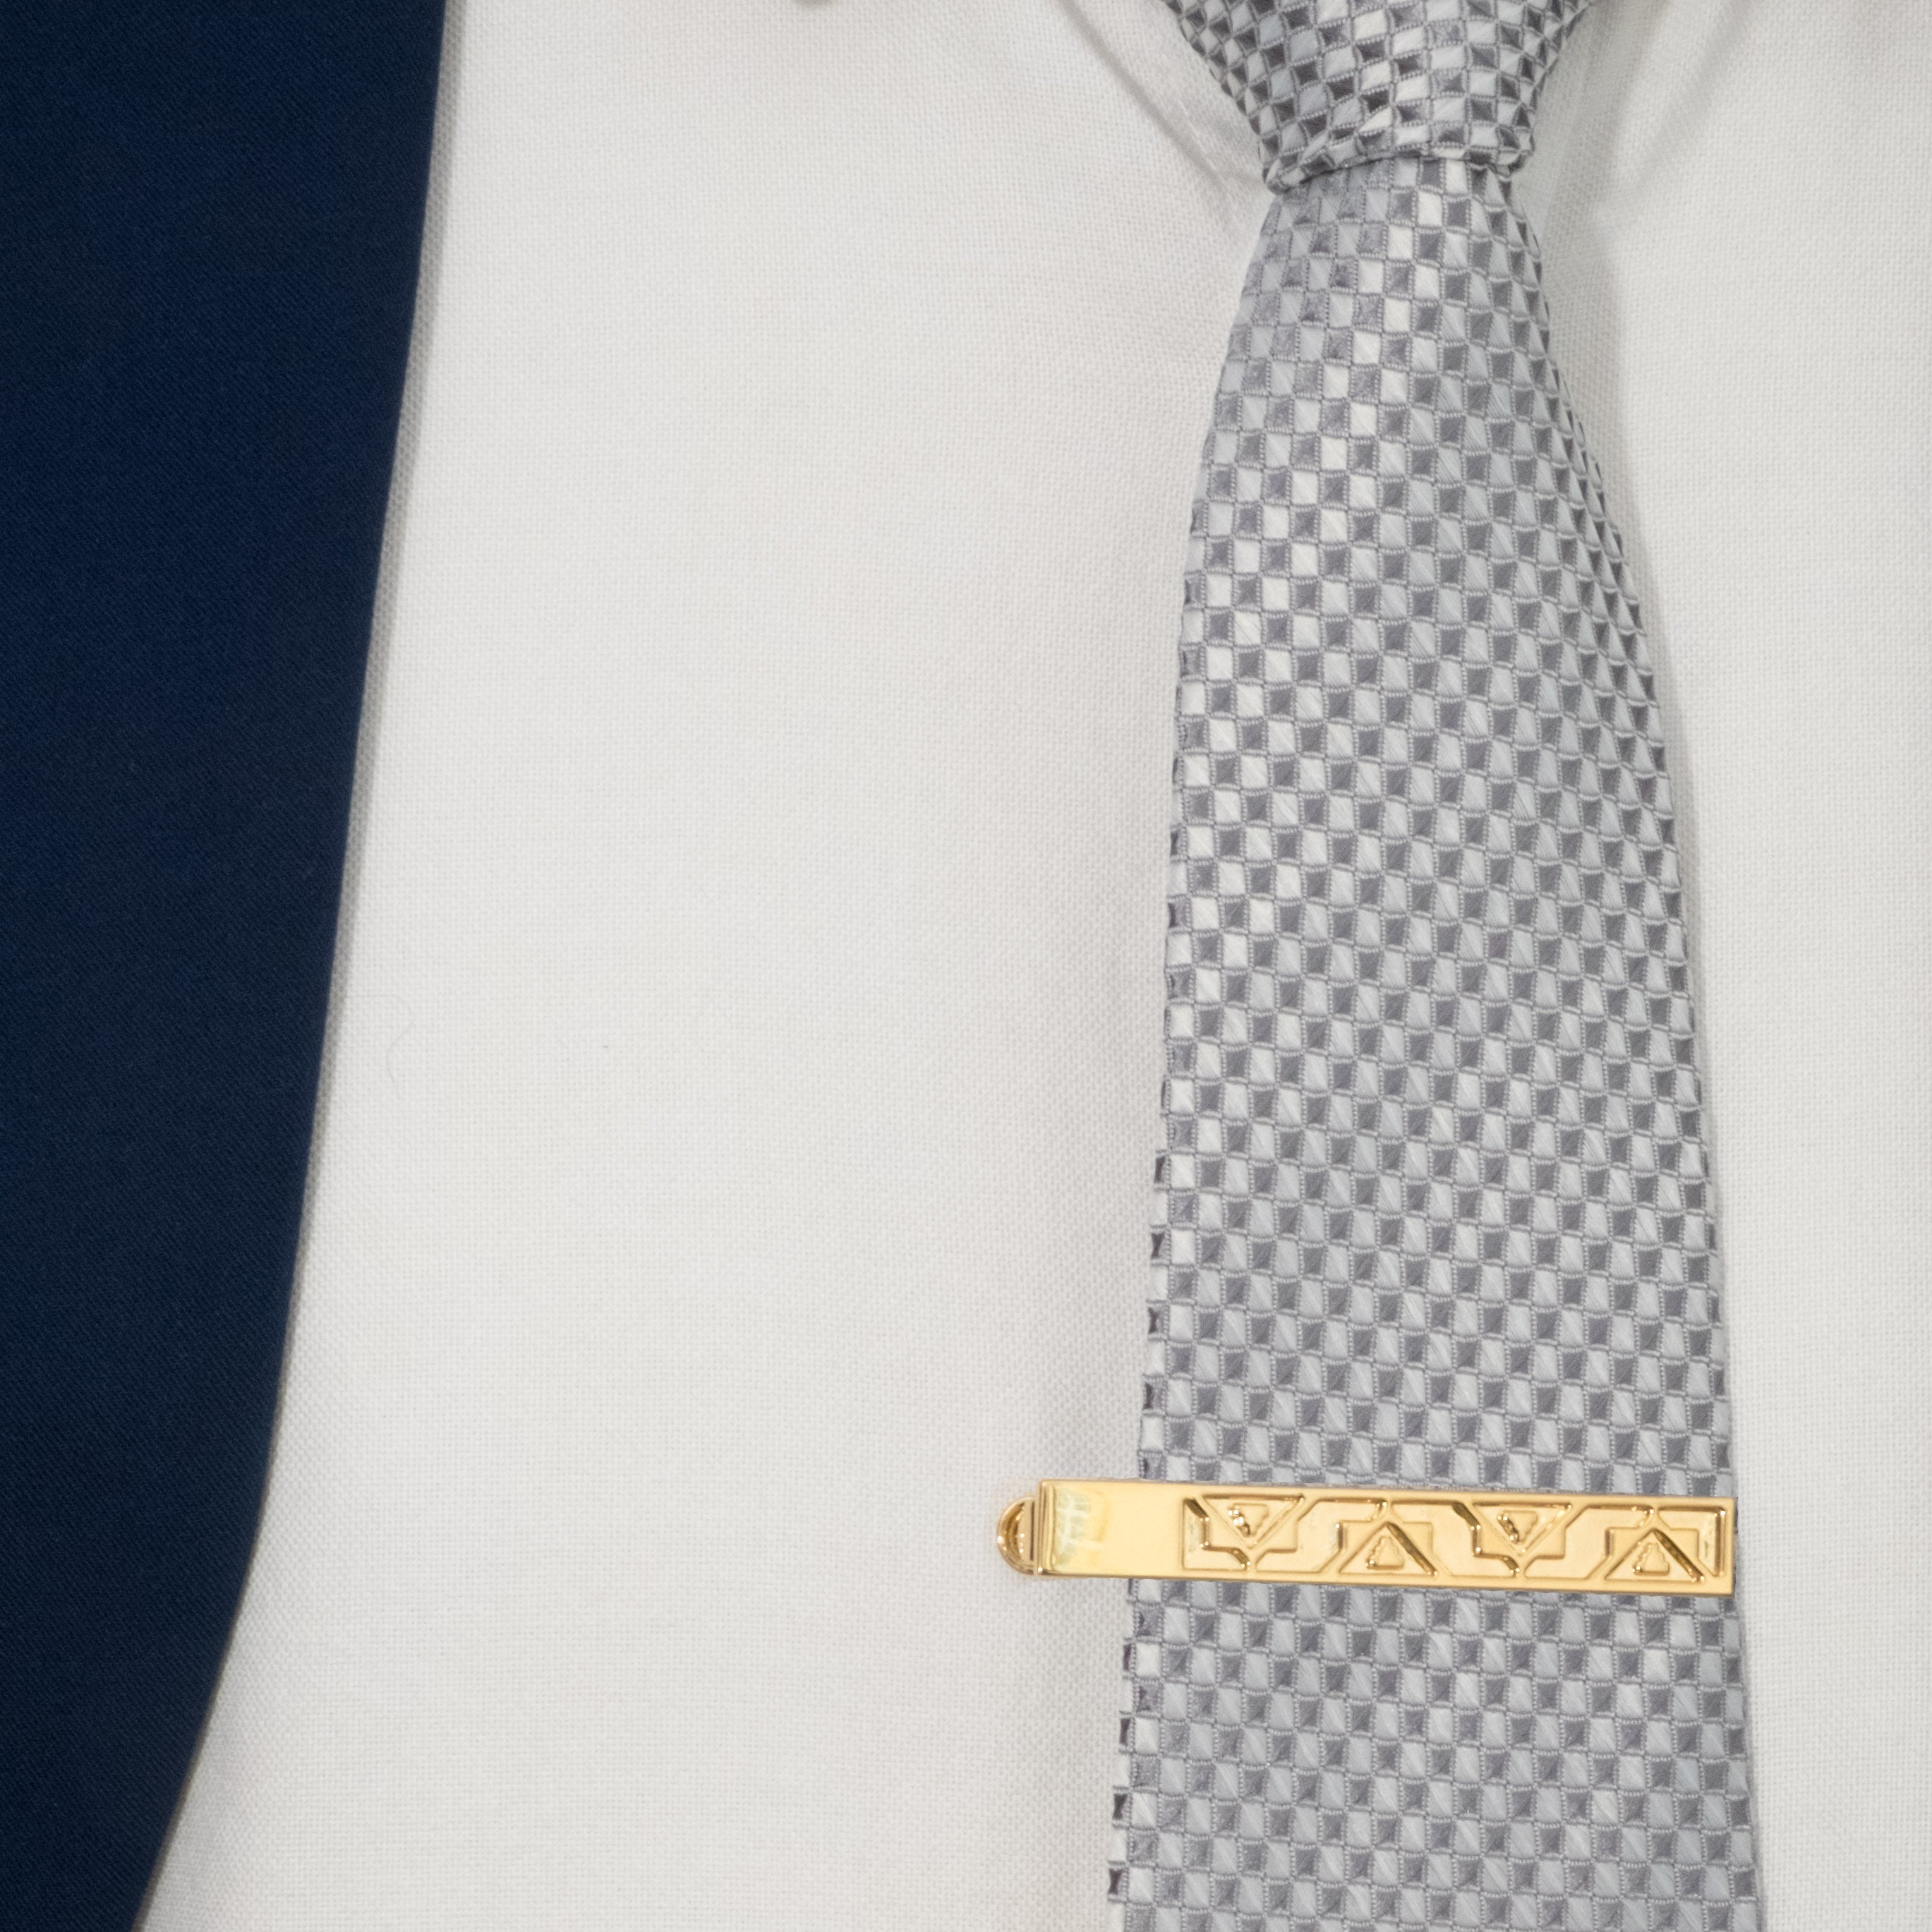 Peranakan Tie Clip (AU) I